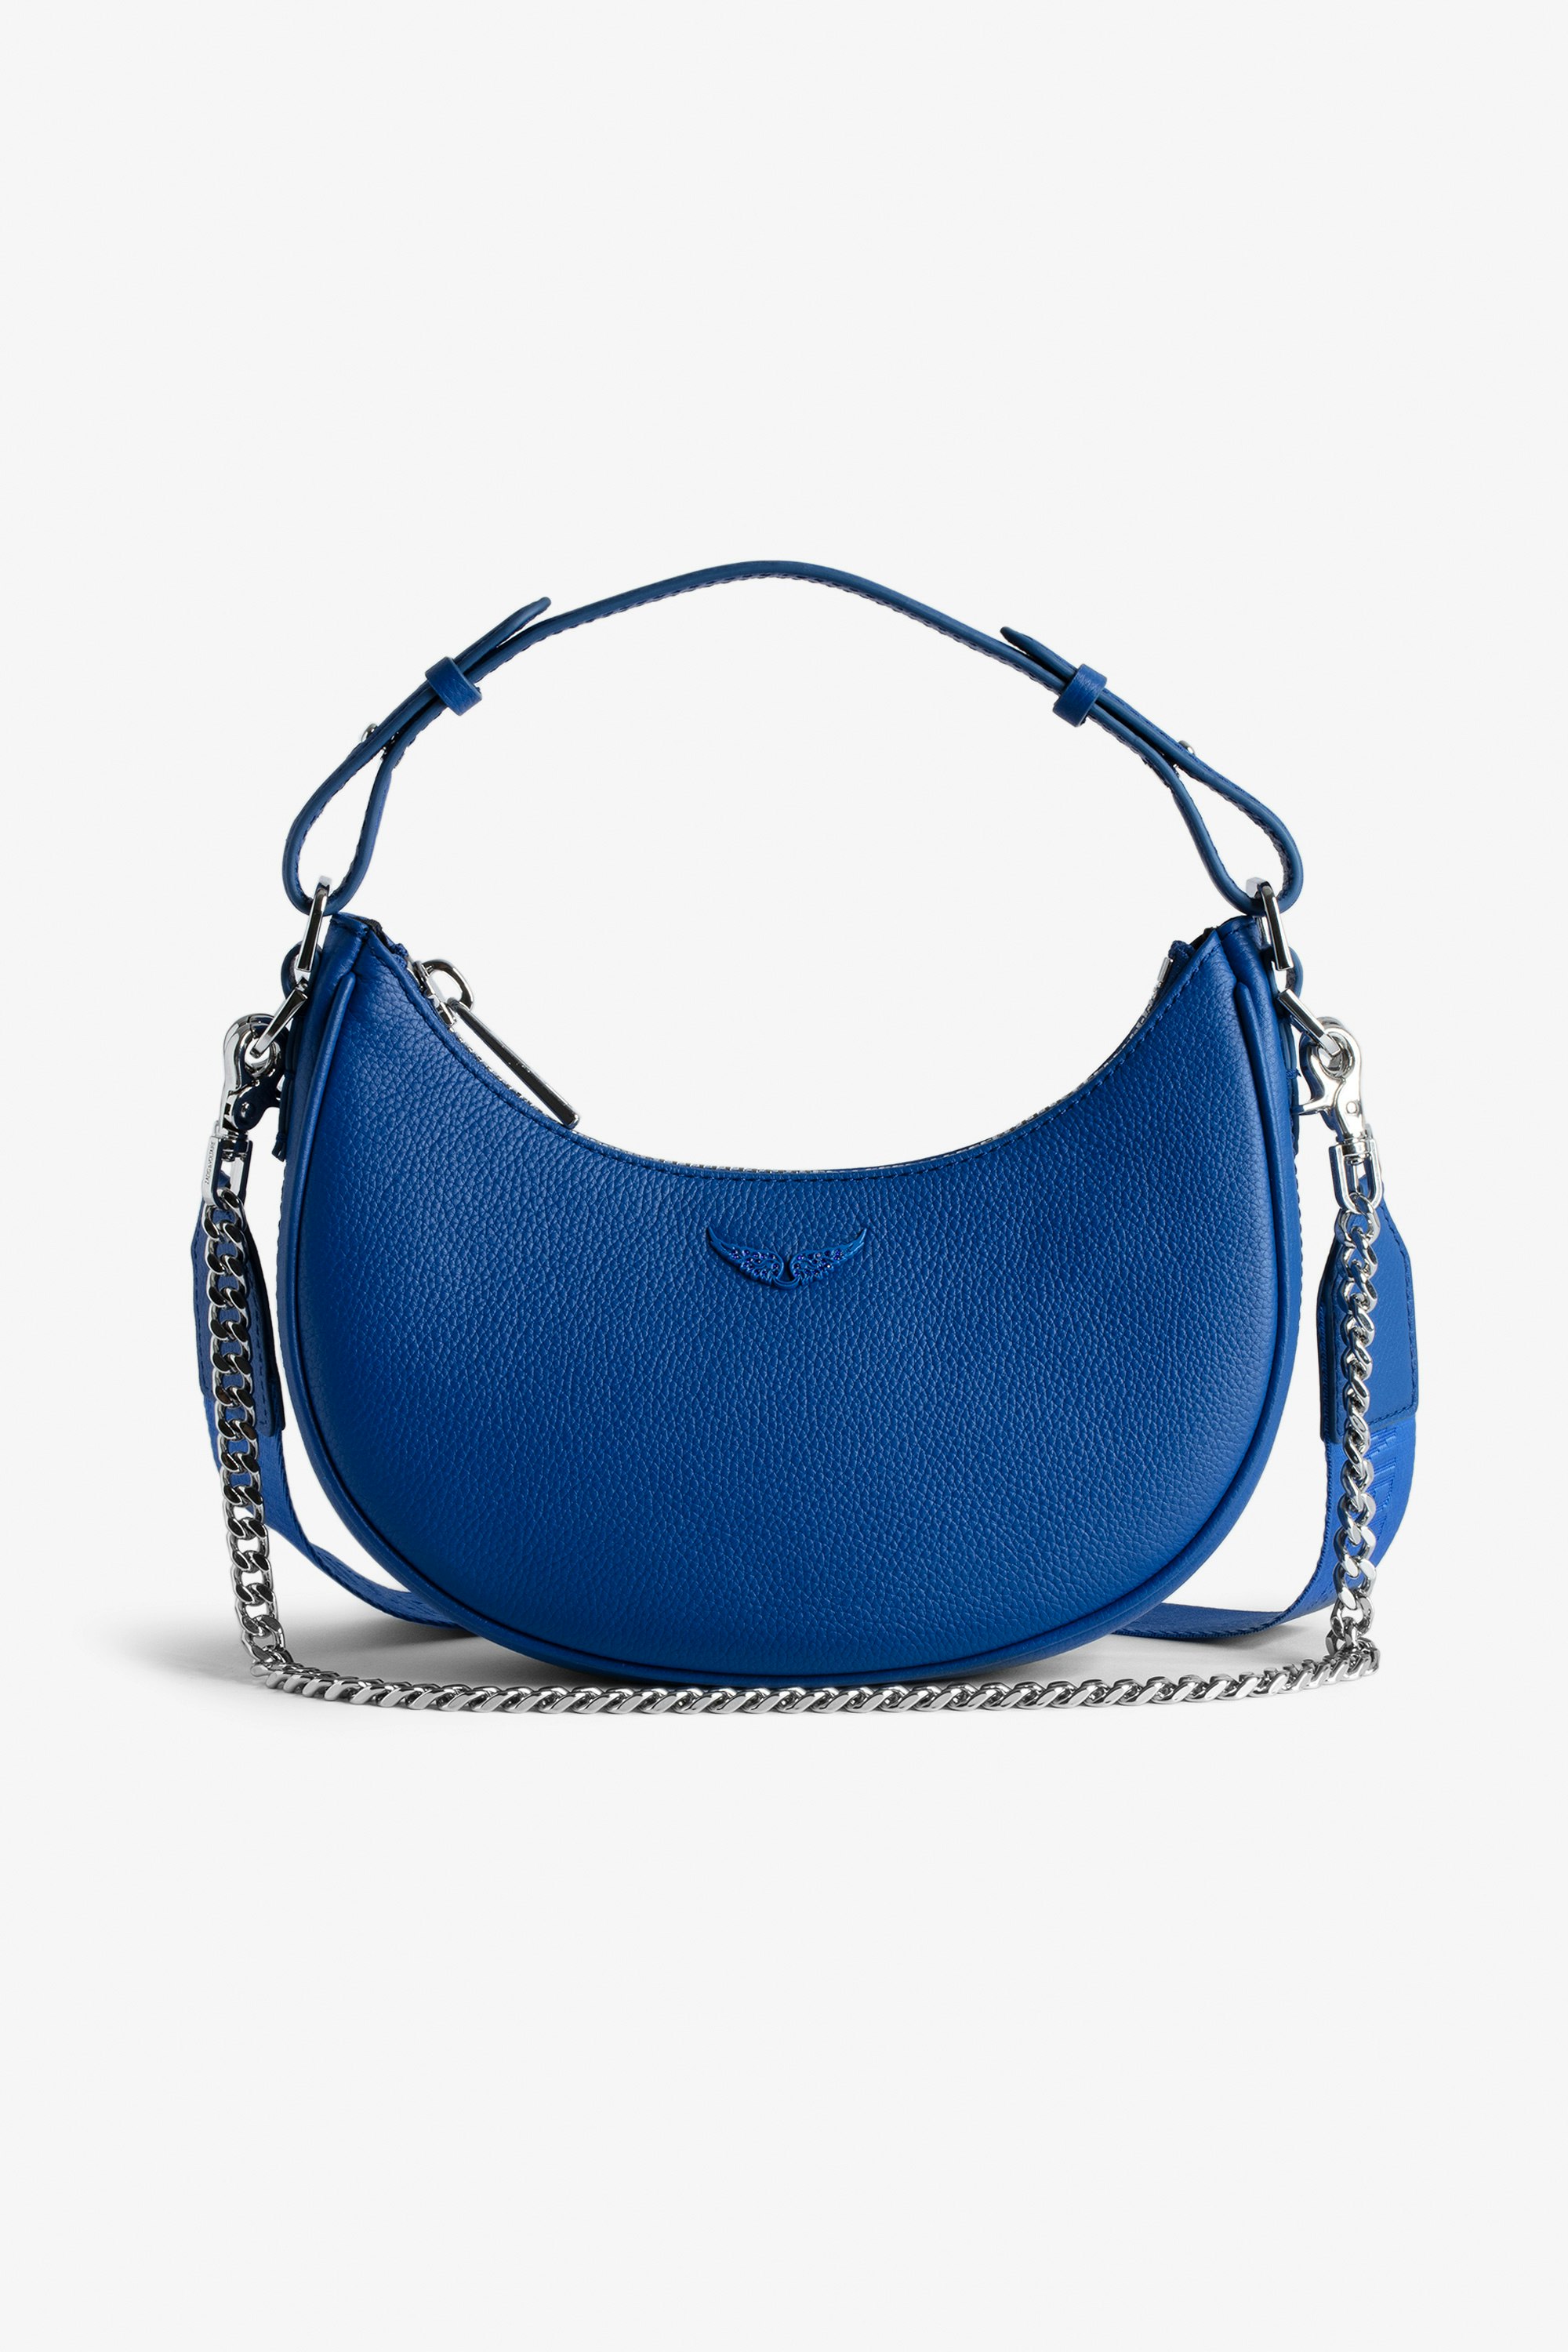 Tasche Moonrock - Halbmondtasche für Damen aus blauem genarbtem Leder mit kurzem Henkel, Schulterriemen, Kette und Signature-Flügeln.